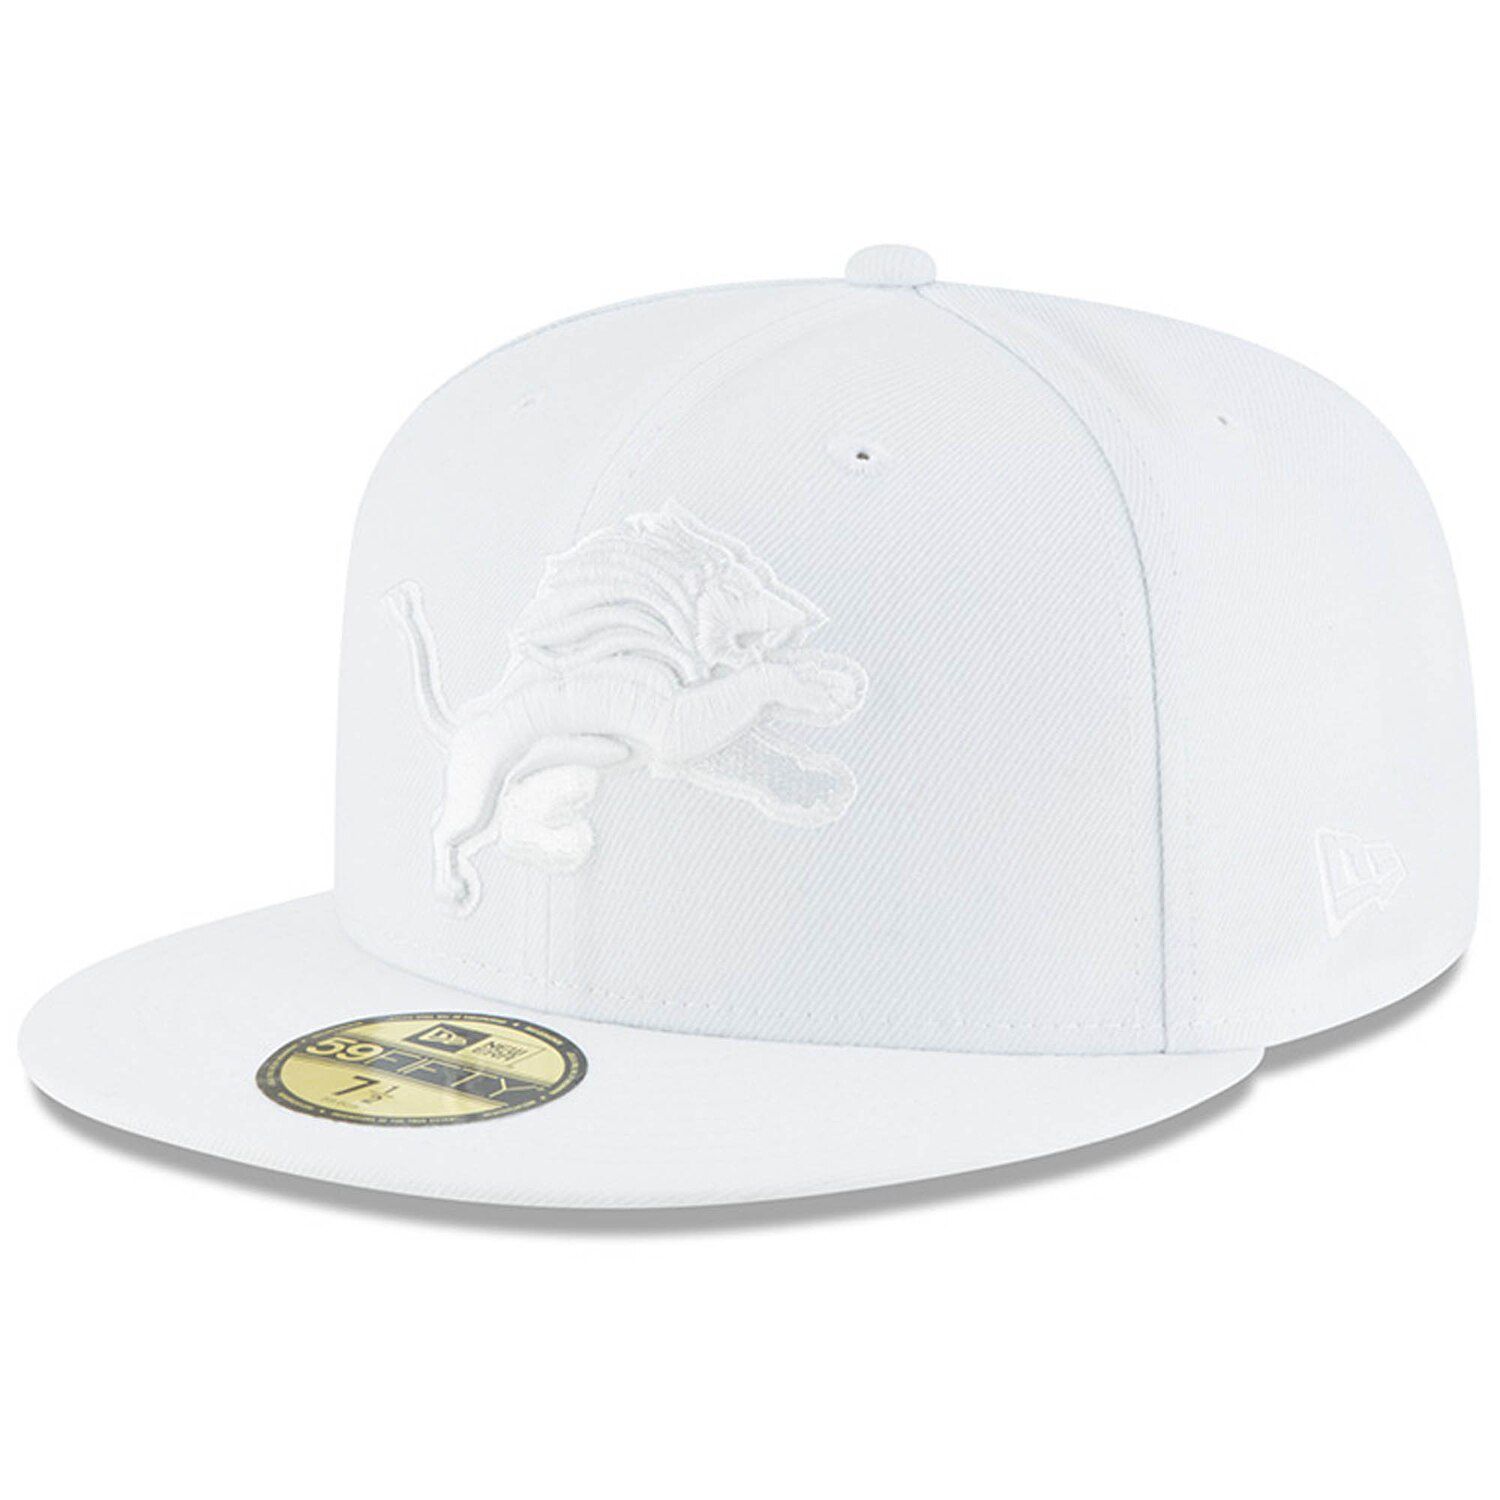 detroit lions white hat